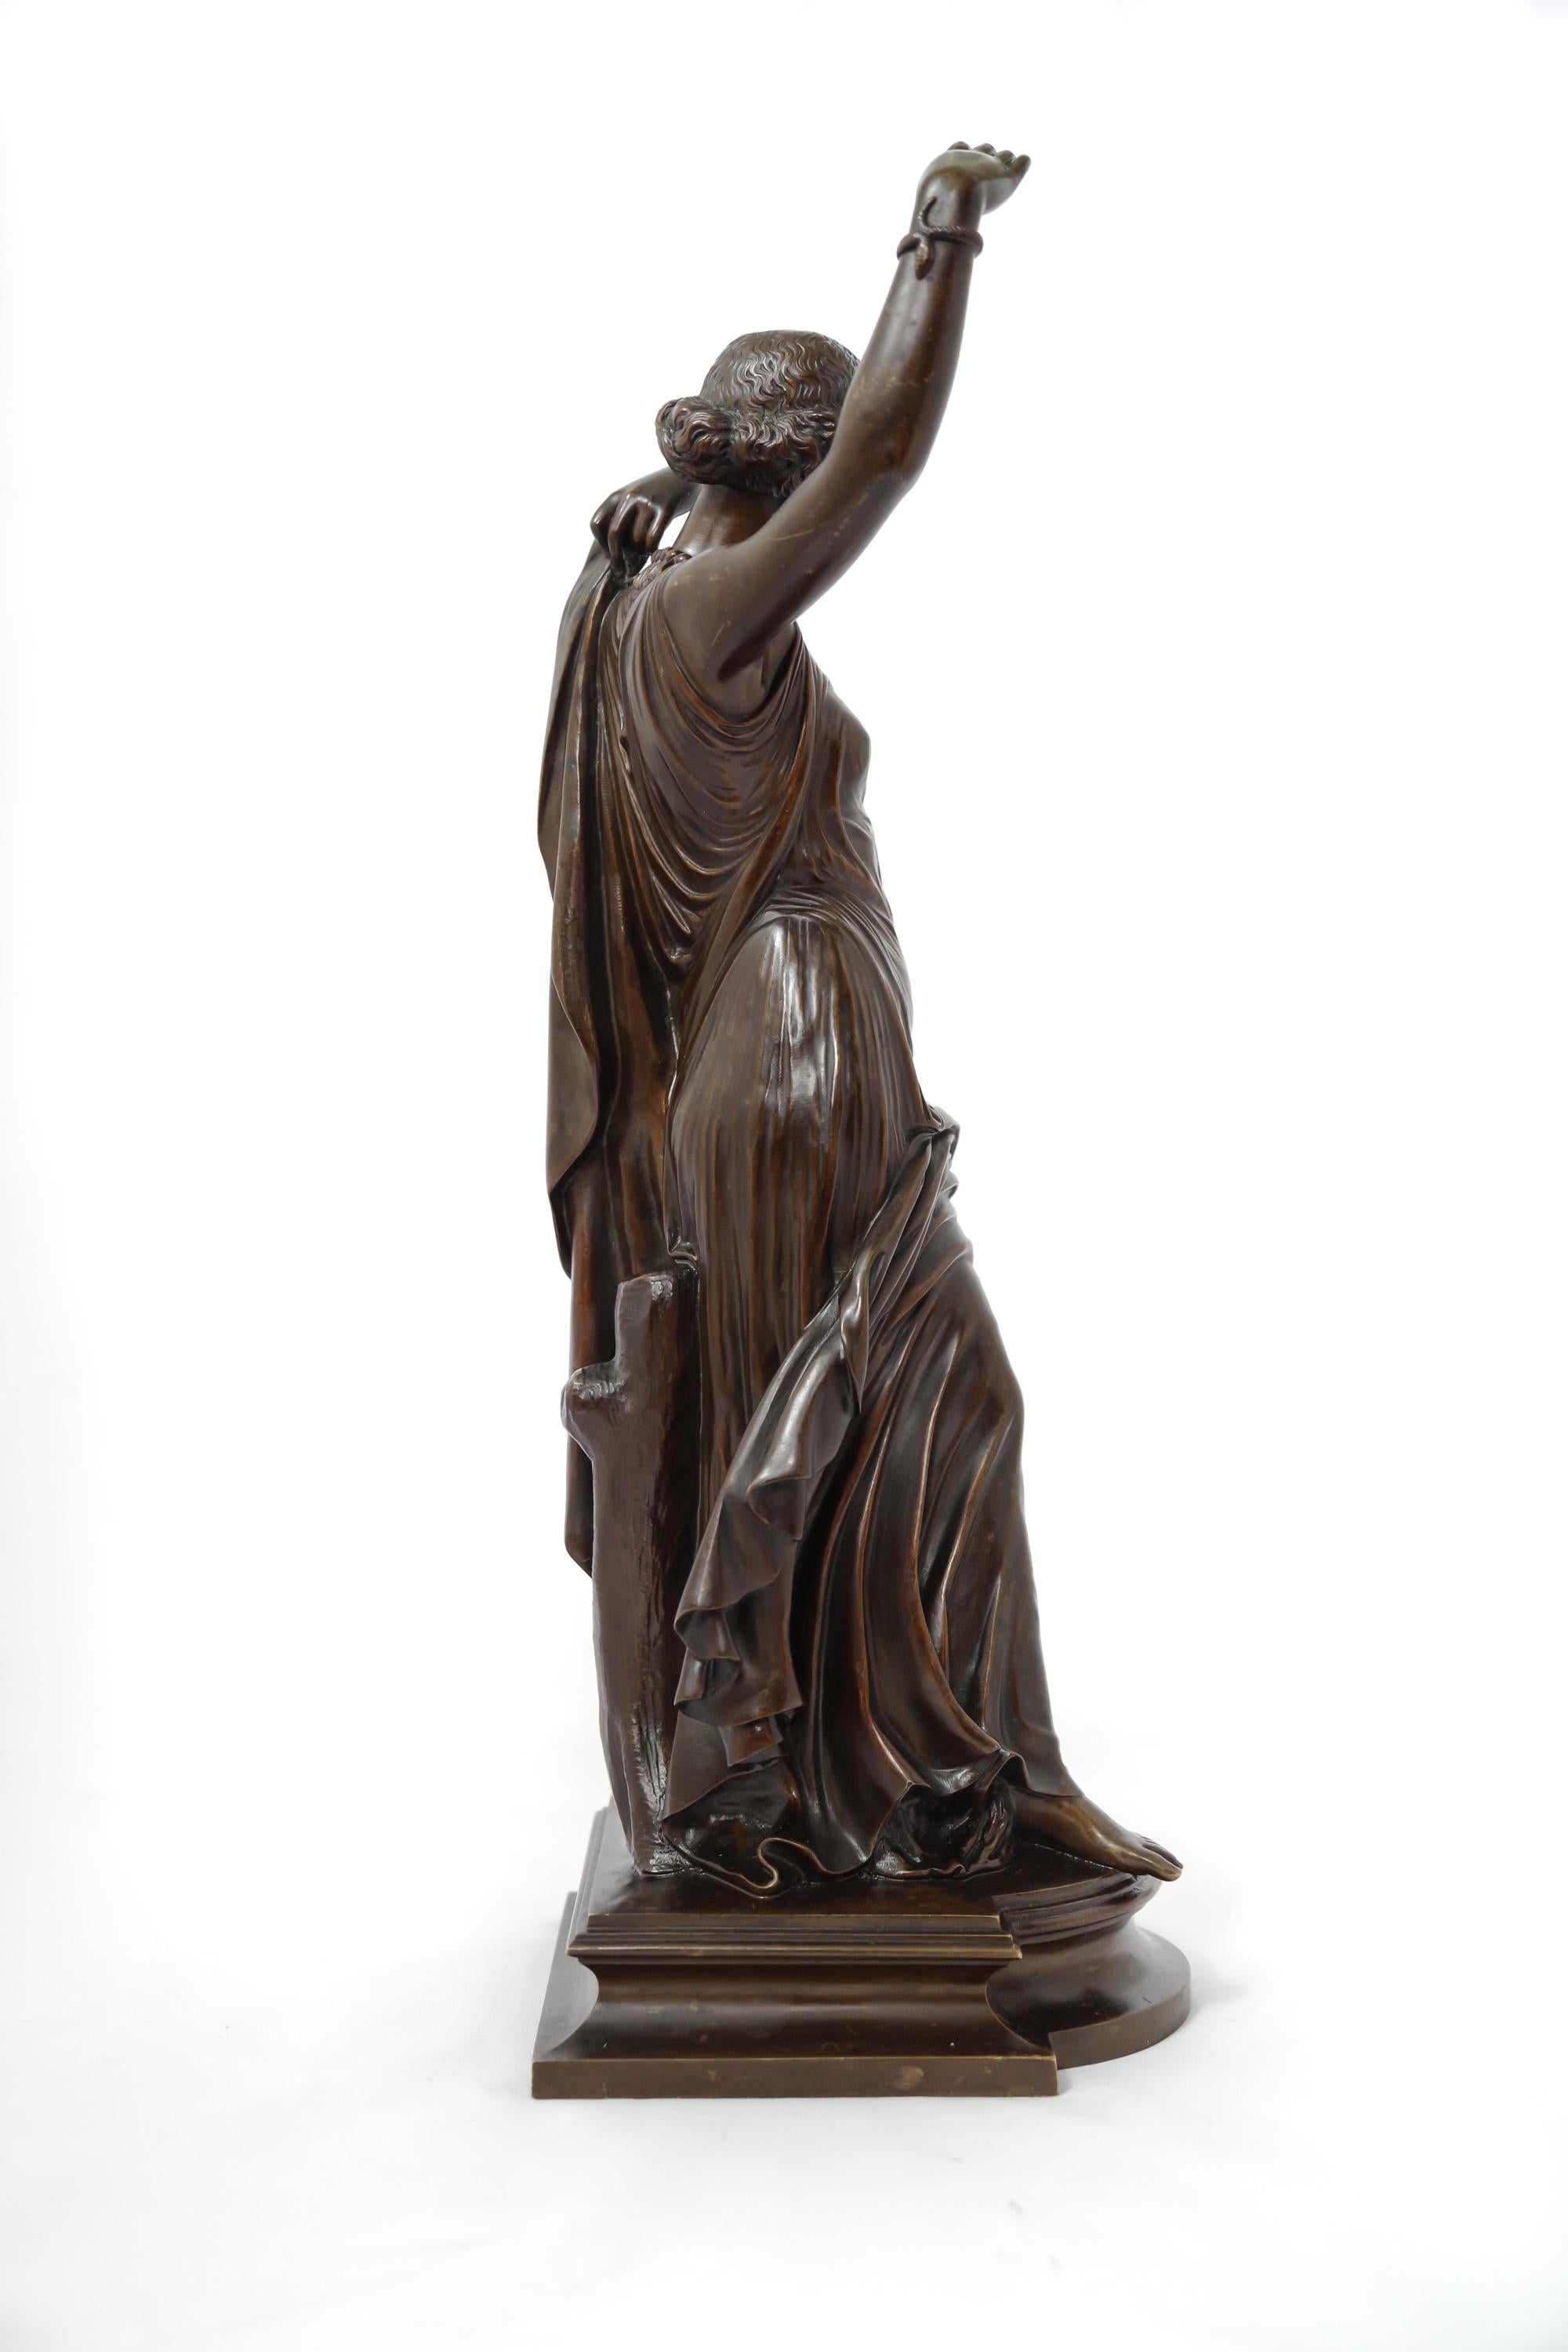 Eine mahagoni-/dunkelschokoladenpatinierte Bronze aus einer der besten Gießereien des 19. Jahrhunderts, Siot-Decauville. Der Bildhauer James Pradier (1790-1852), der seine Karriere mit Werken im neoklassizistischen Stil begann, dann aber zur